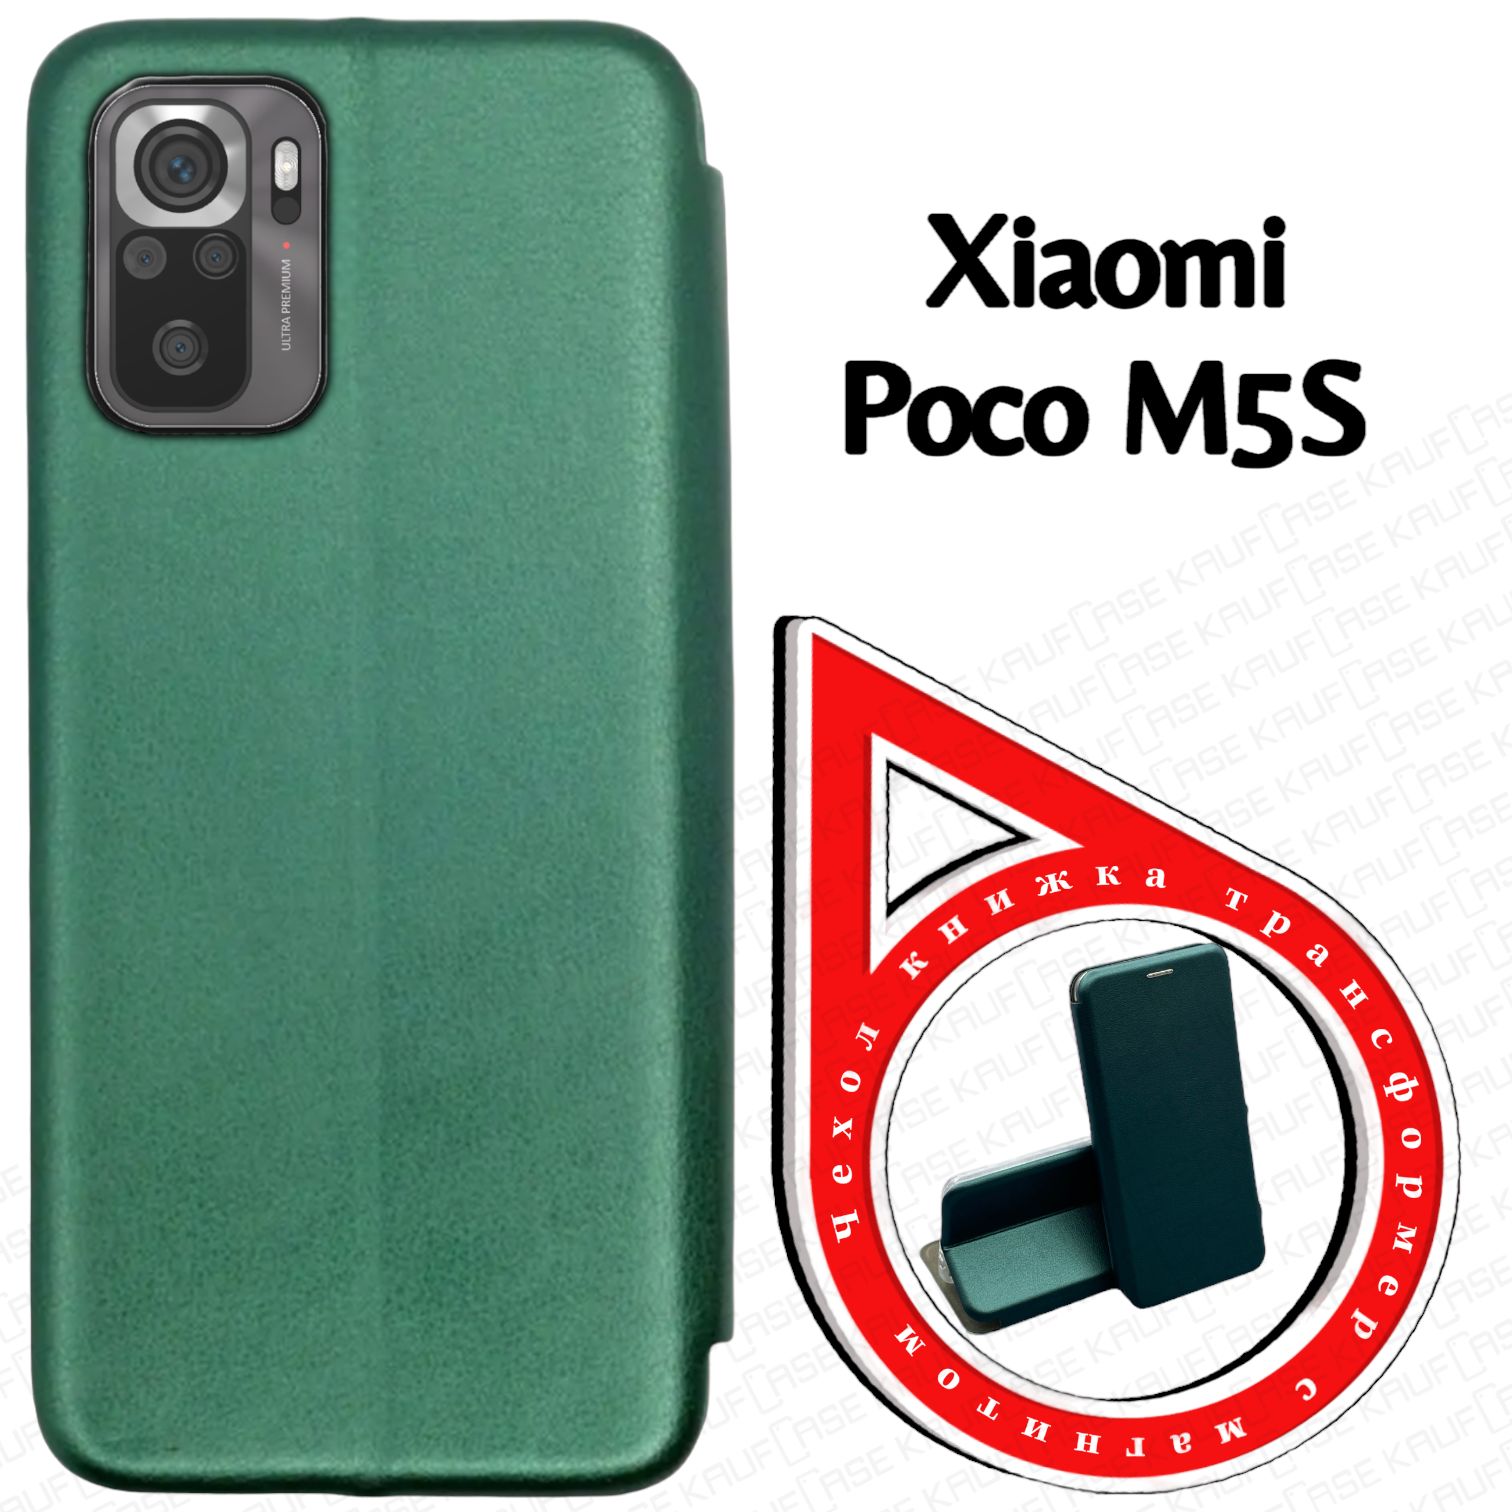 ЧехолкнижкадлятелефонаXiaomiPocoM5s(6.43"),темно-зеленый.Трансфомер